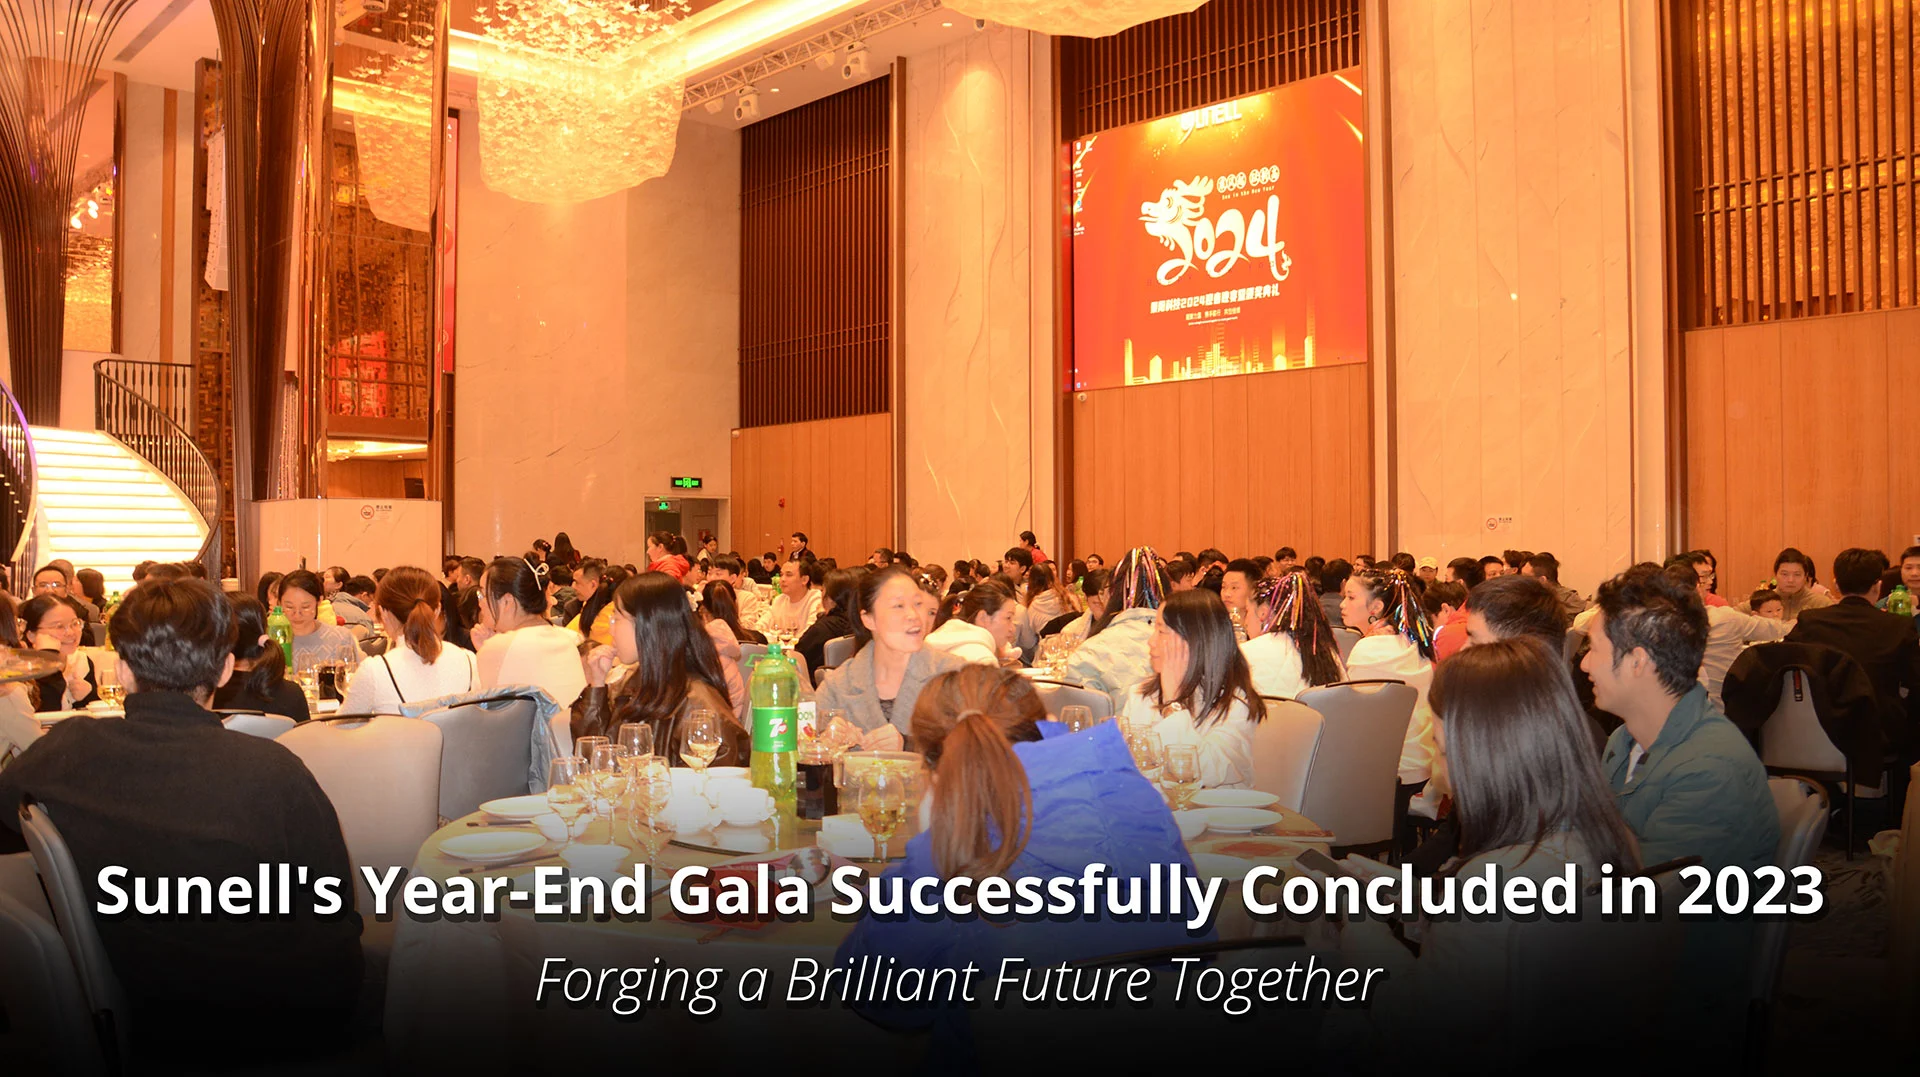 Sunells Gala zum Jahresende endete erfolgreich im Jahr 2023 und schmiedete gemeinsam eine glänzende Zukunft